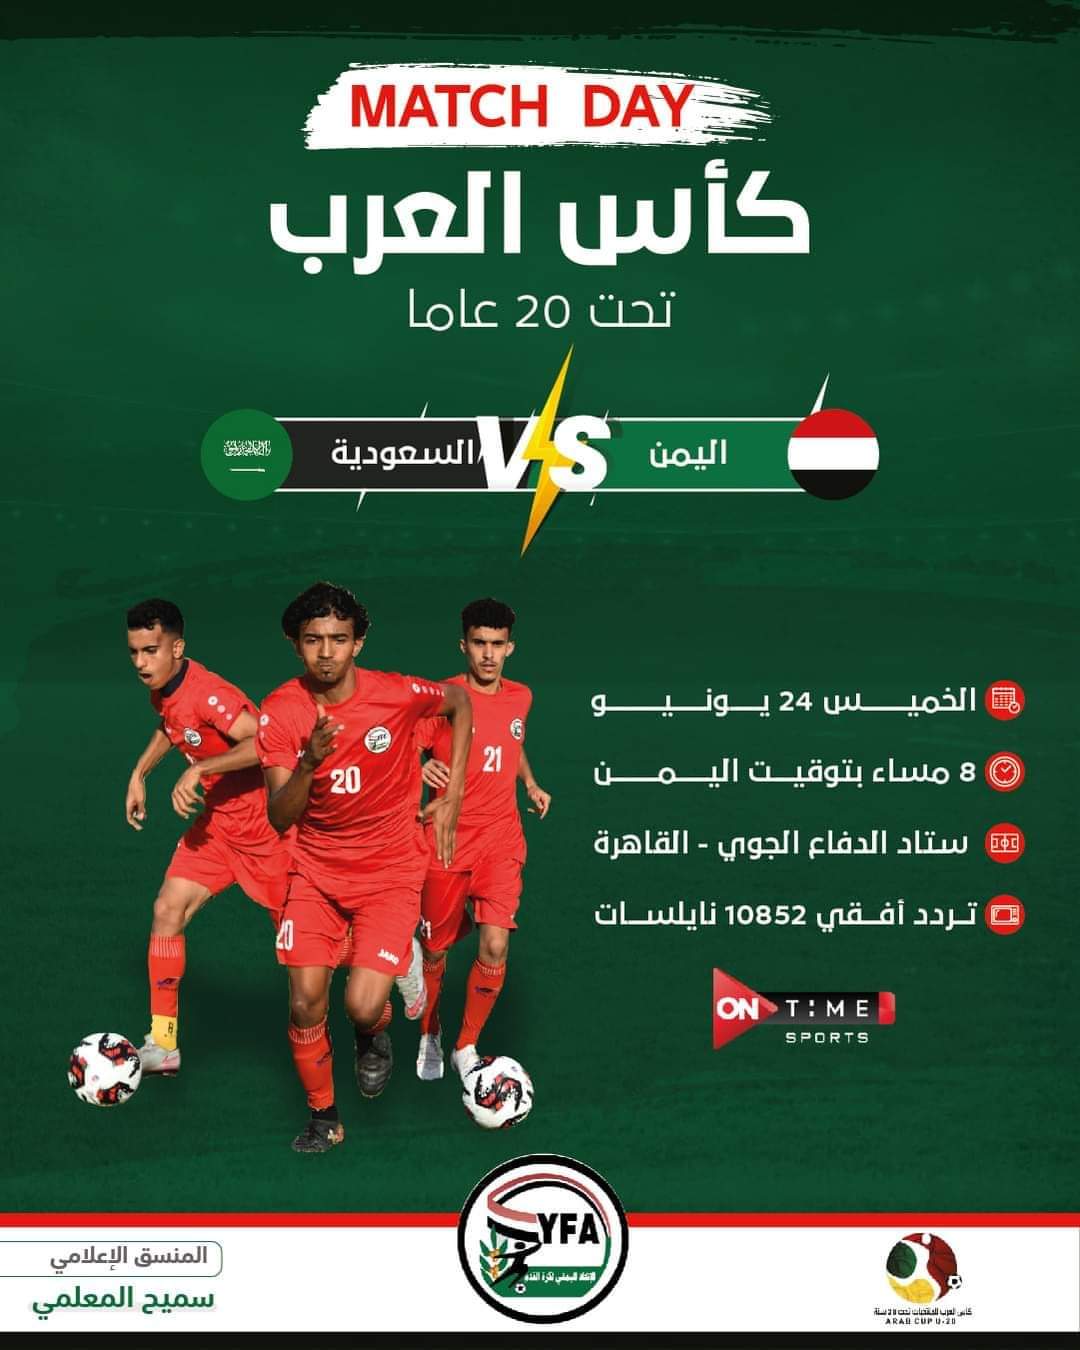 منتخب اليمن الصغير يواجه نظيره السعودي في مباراة حاسمة بعد قليل